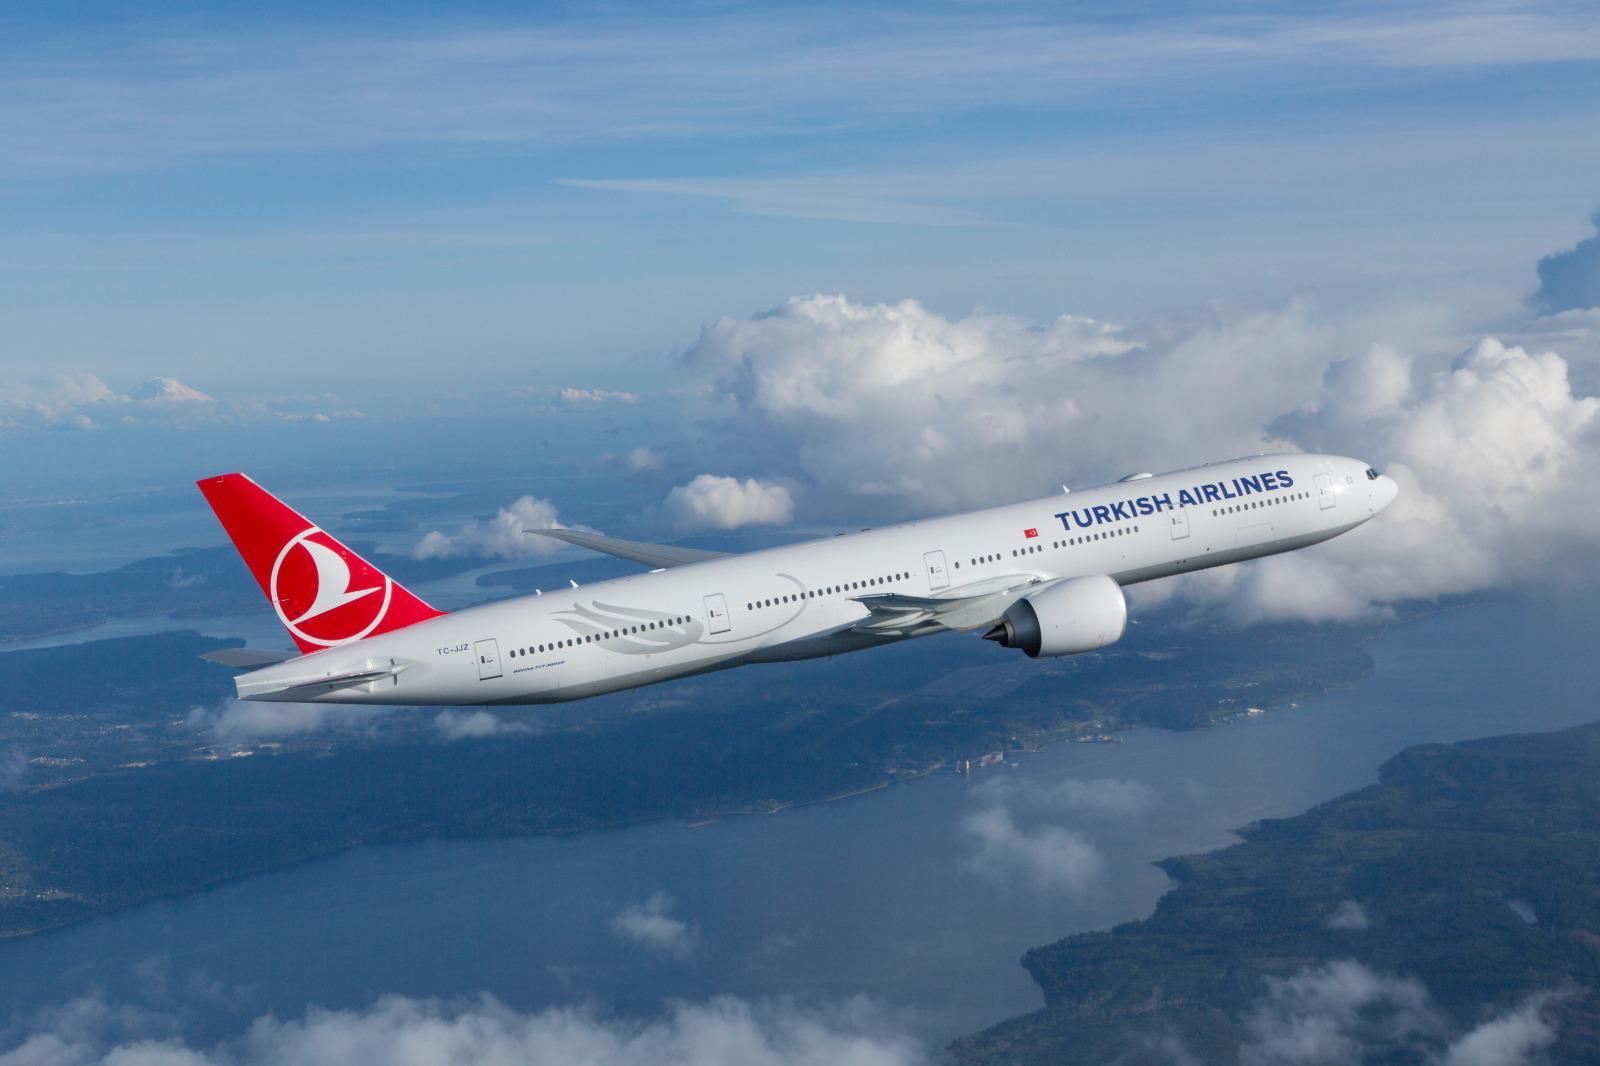 türk hava yolları, turkish airlines